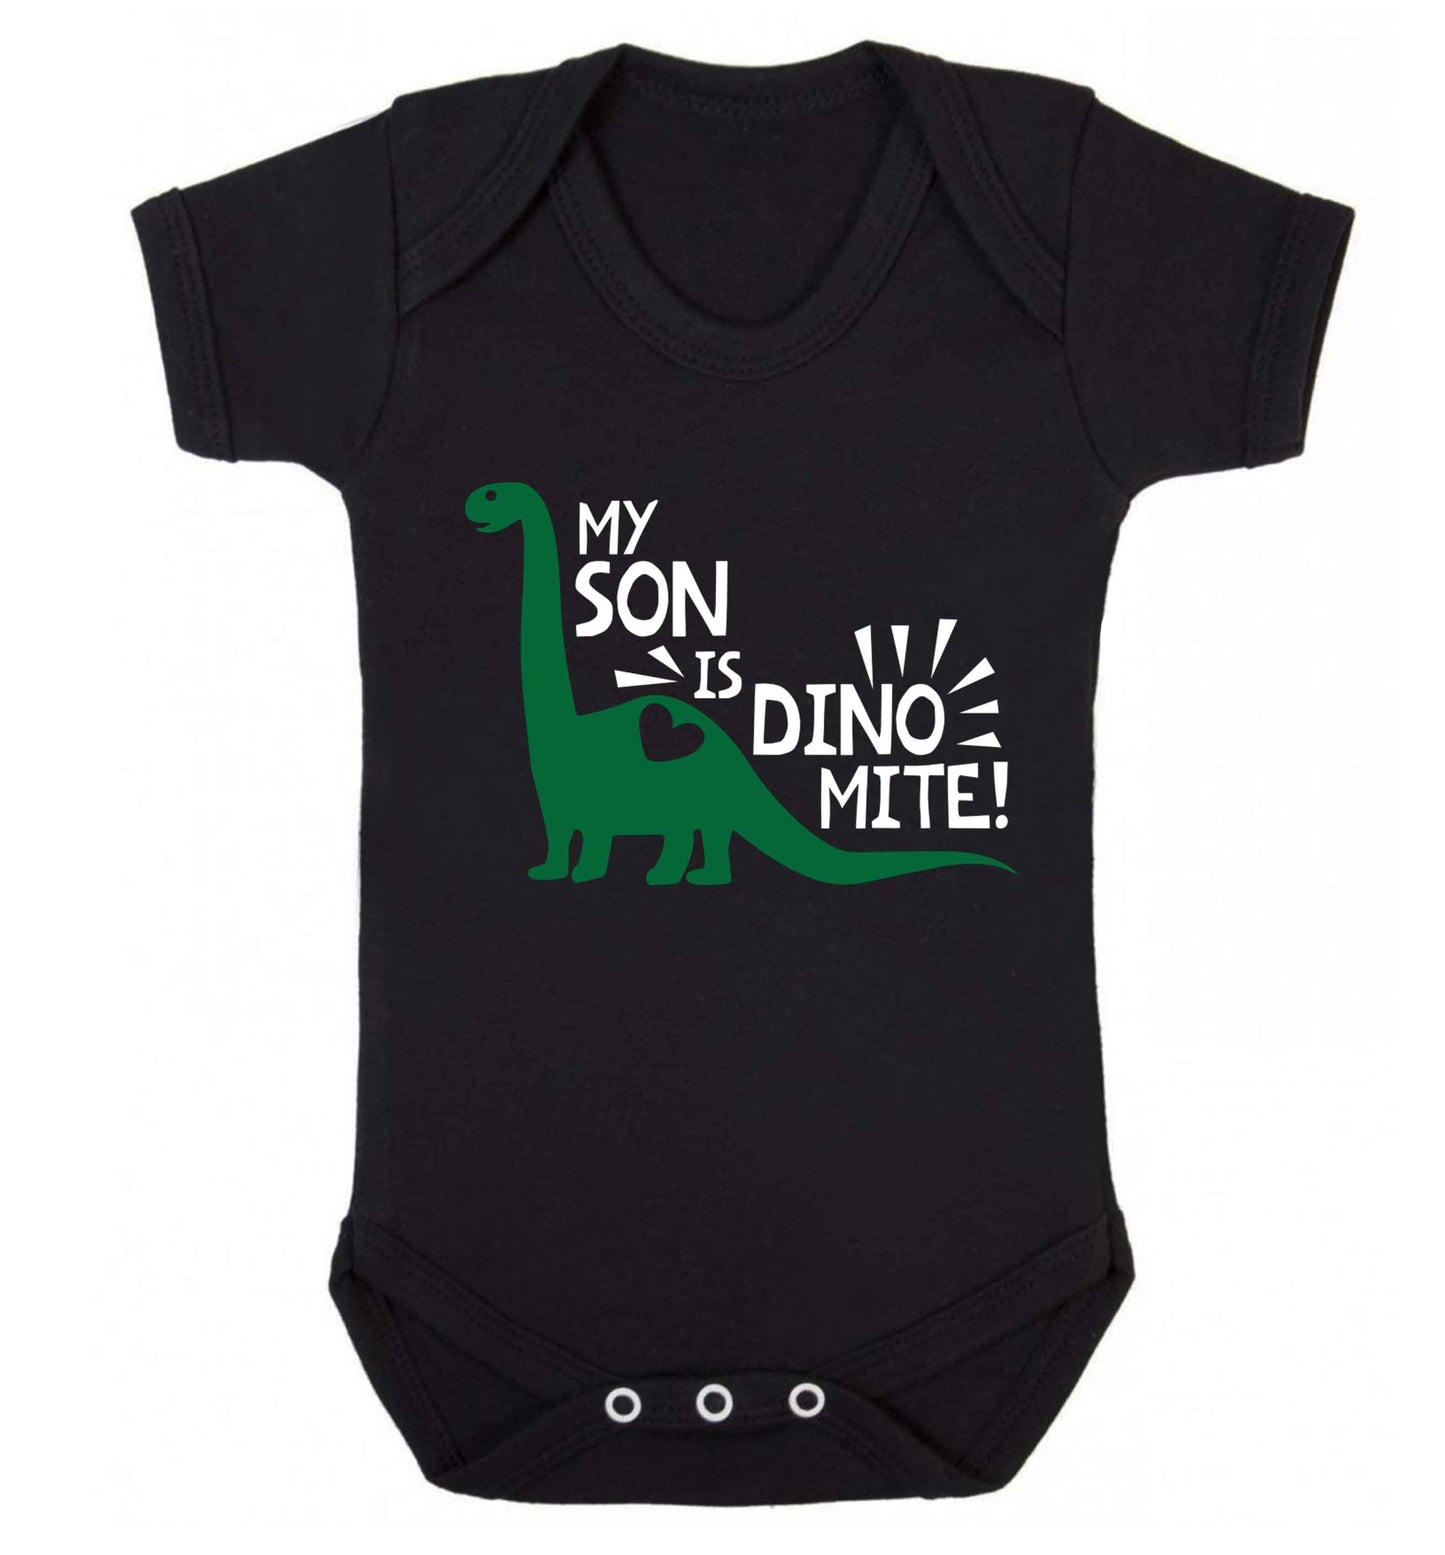 My son is dinomite! Baby Vest black 18-24 months